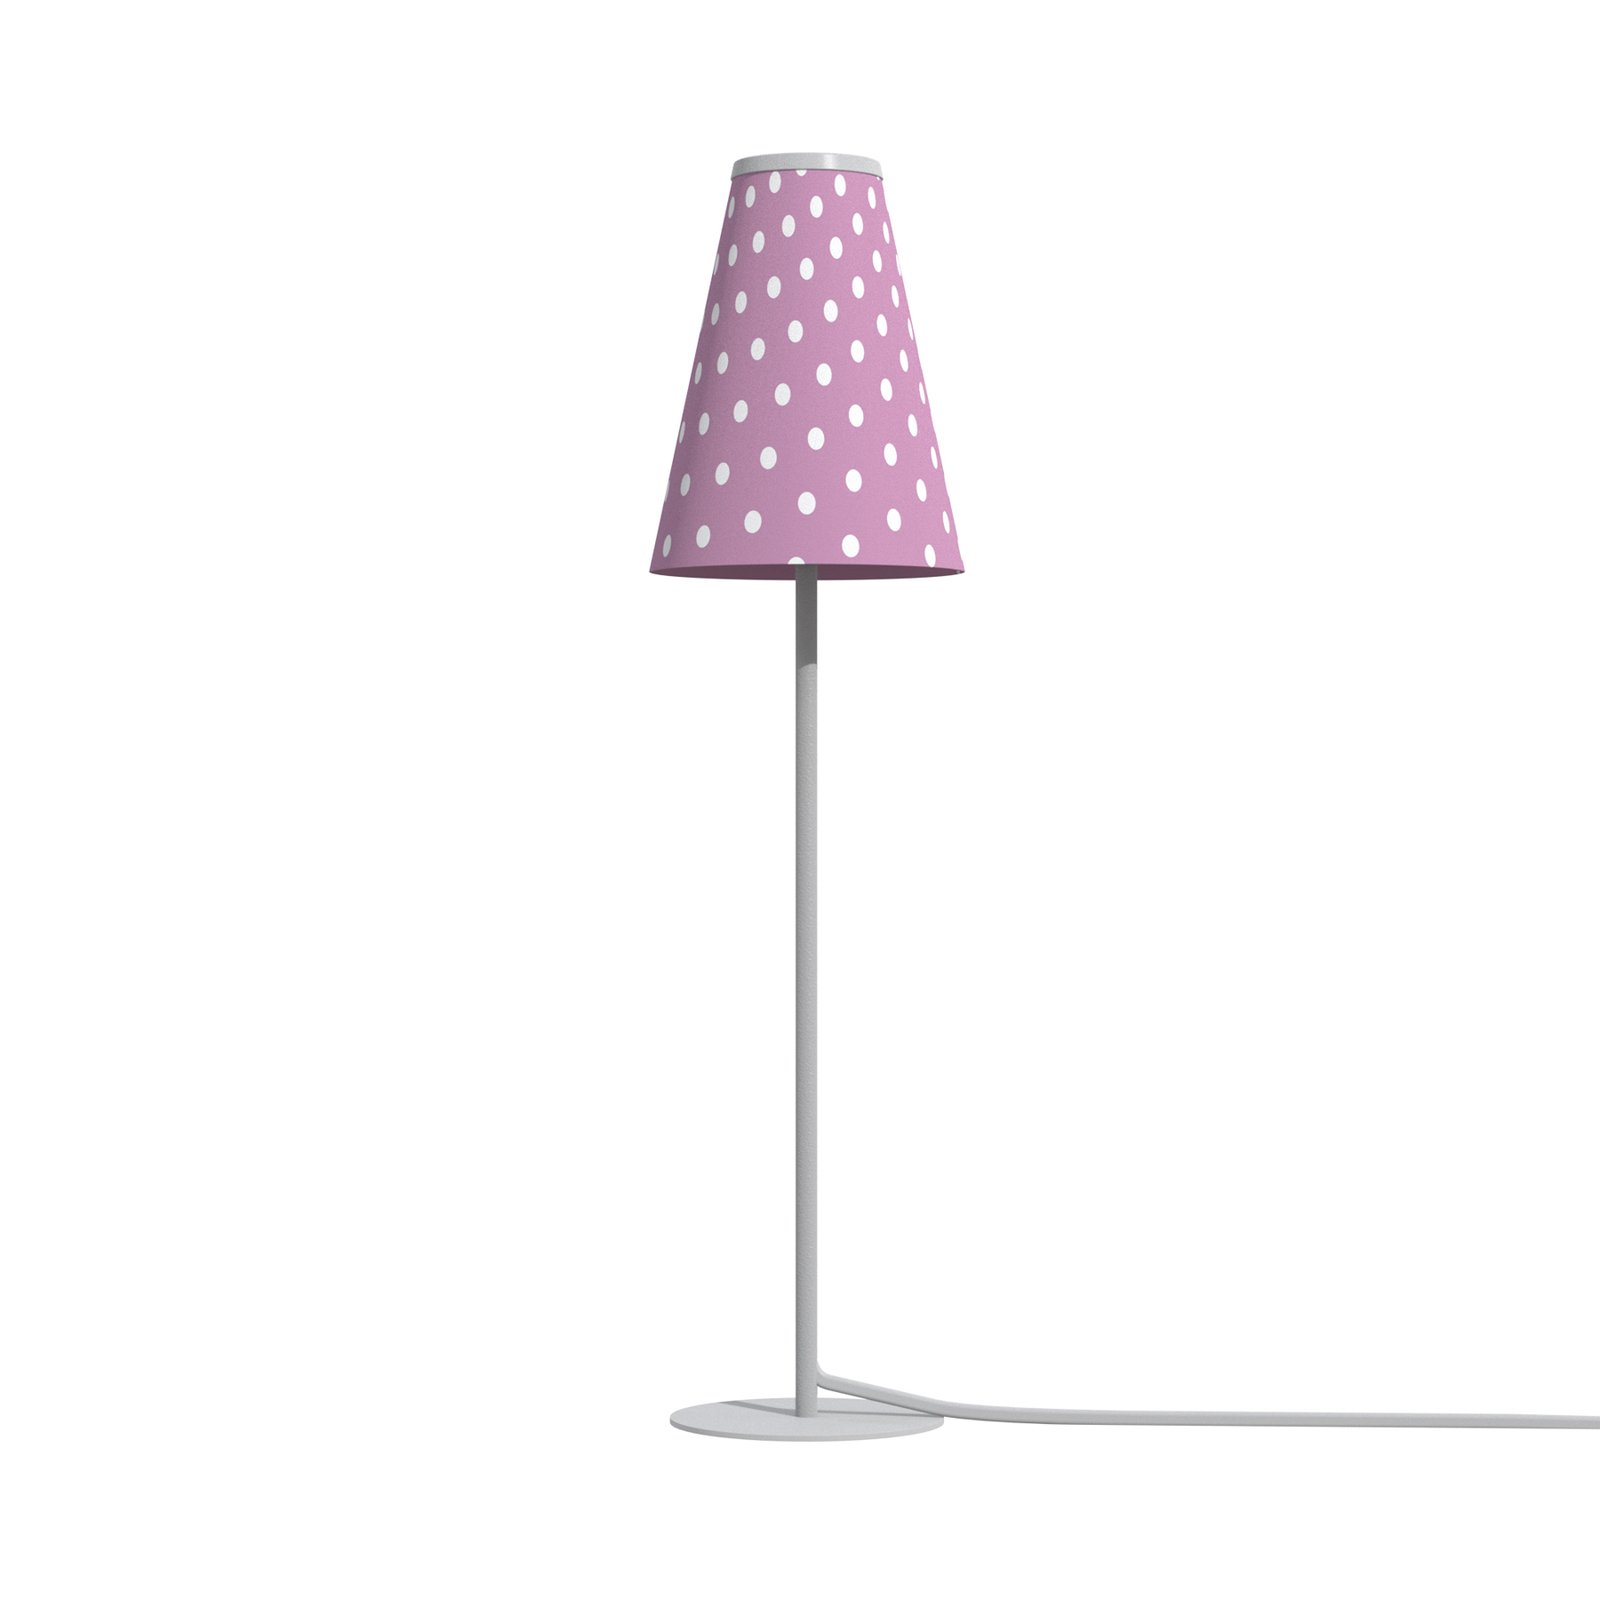 Lampa stołowa Trifle, różowa/biała z kropkami